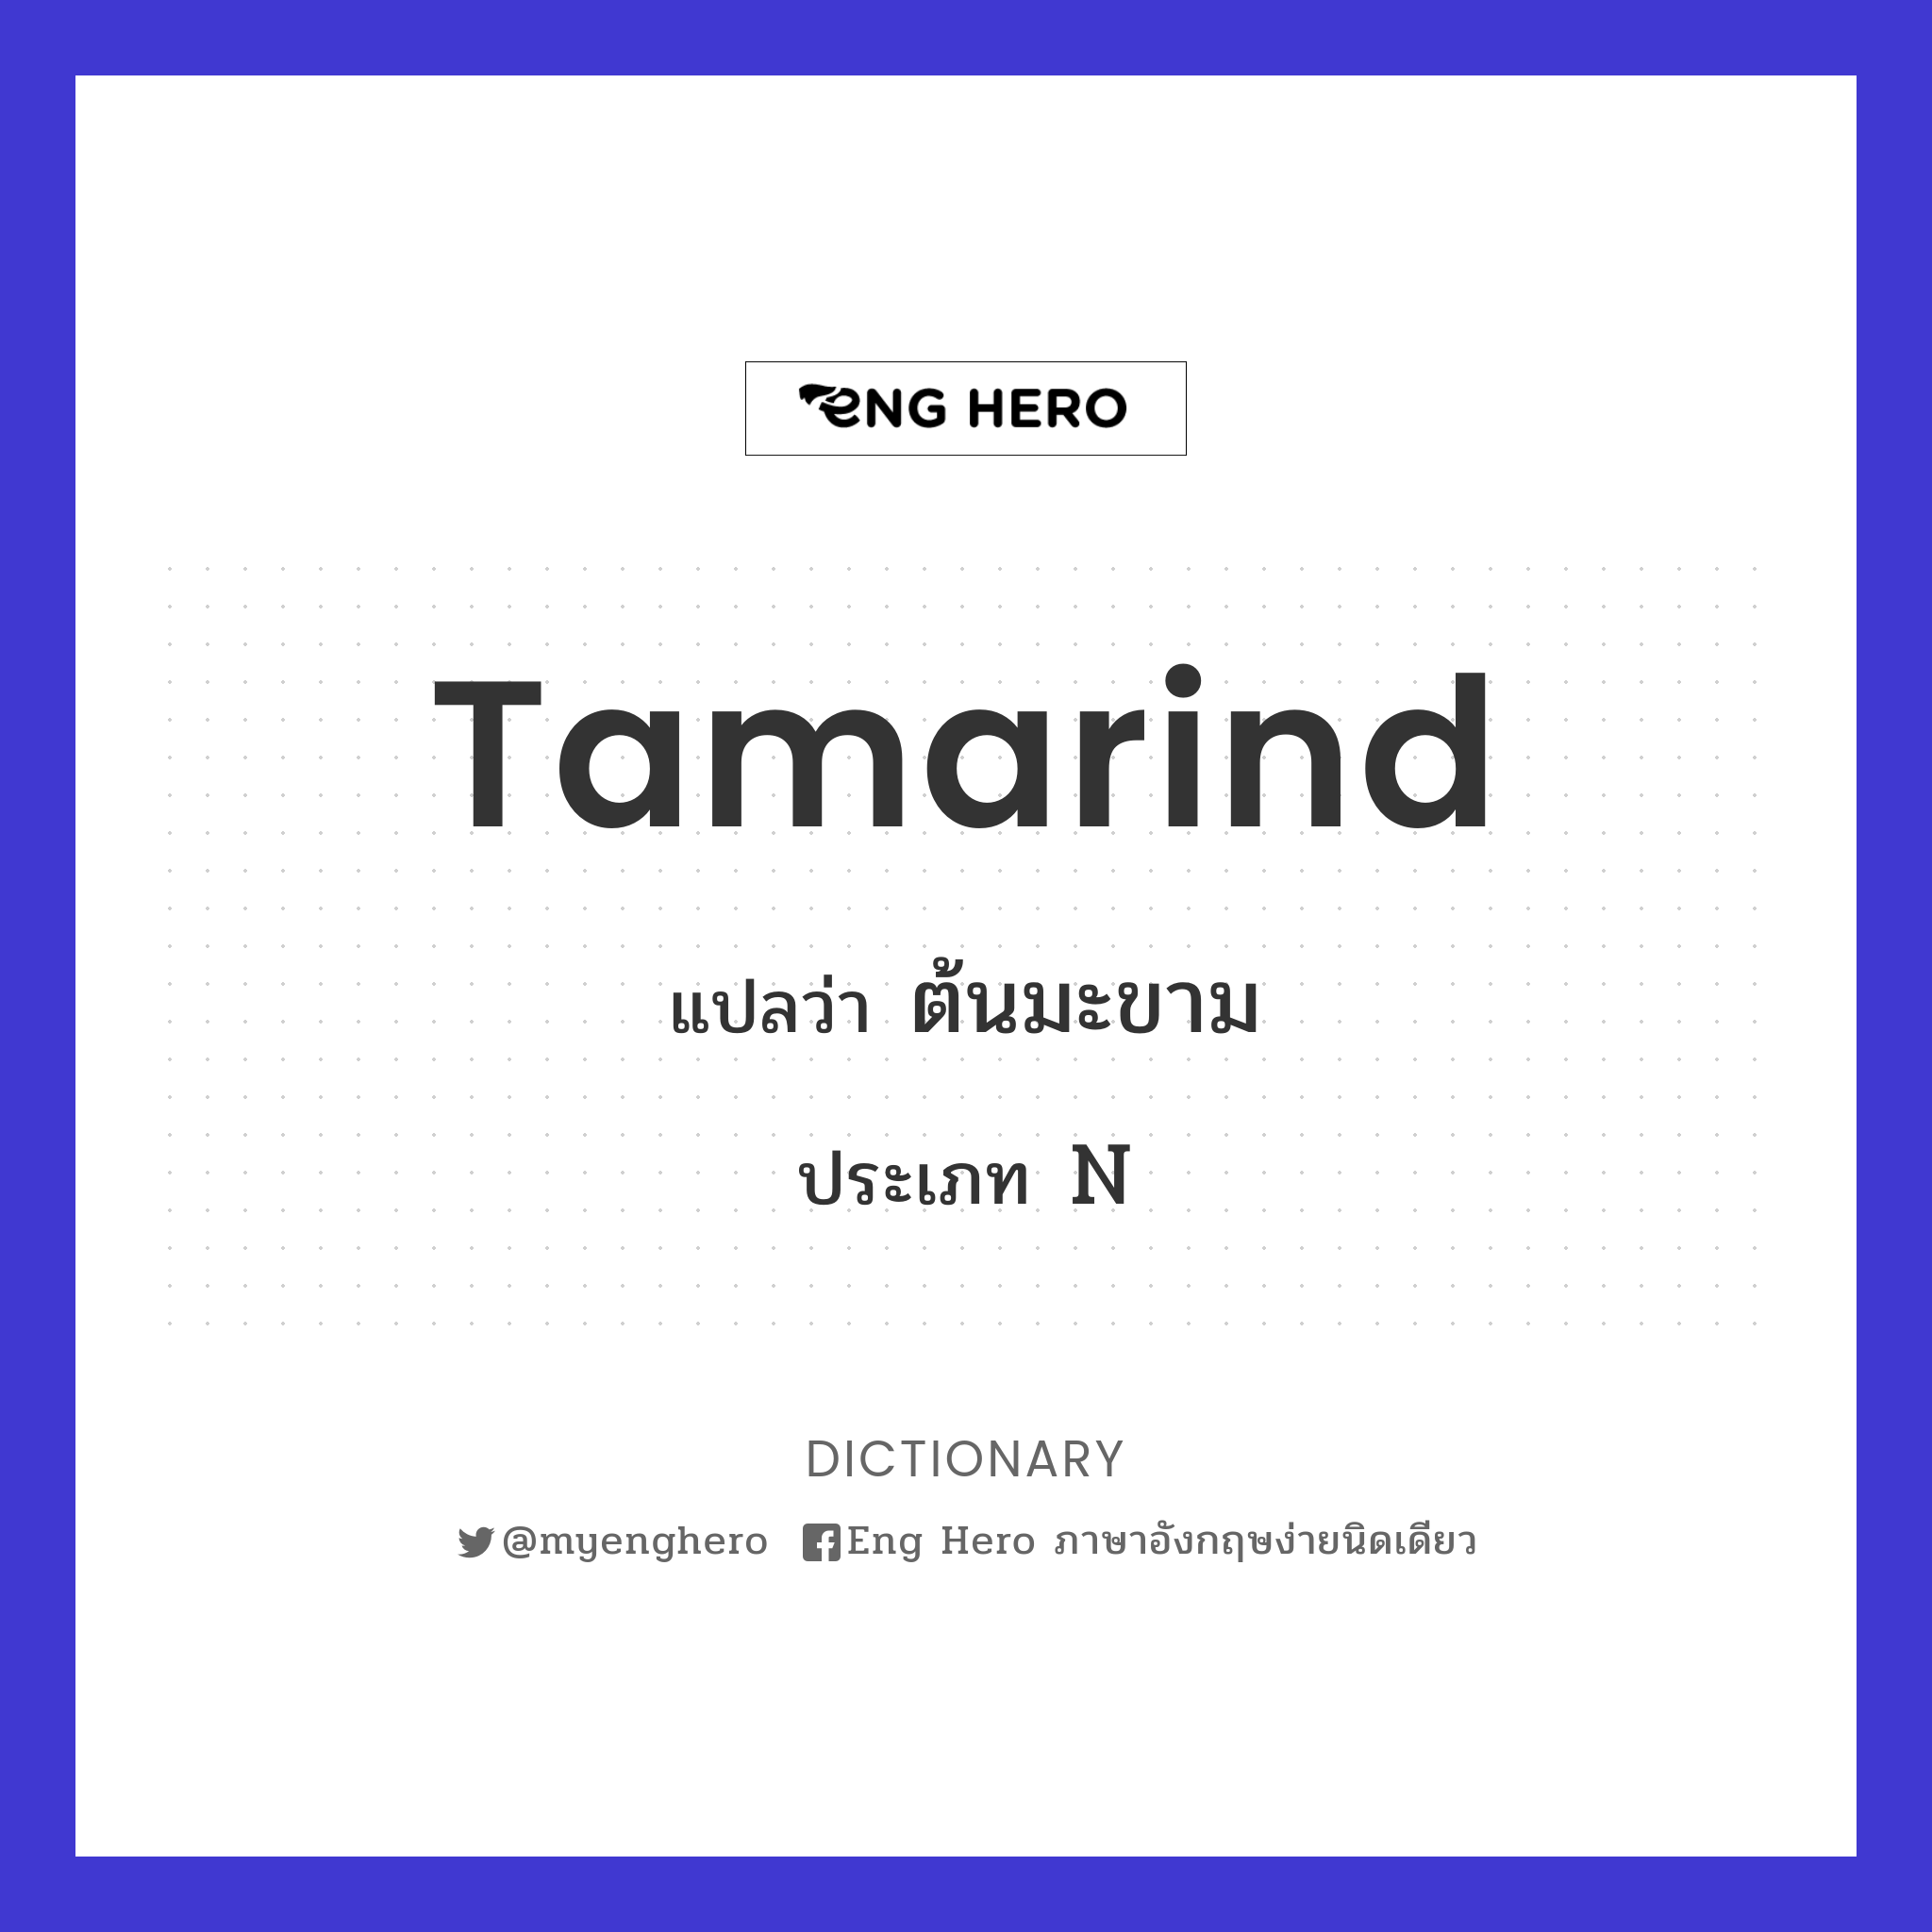 tamarind